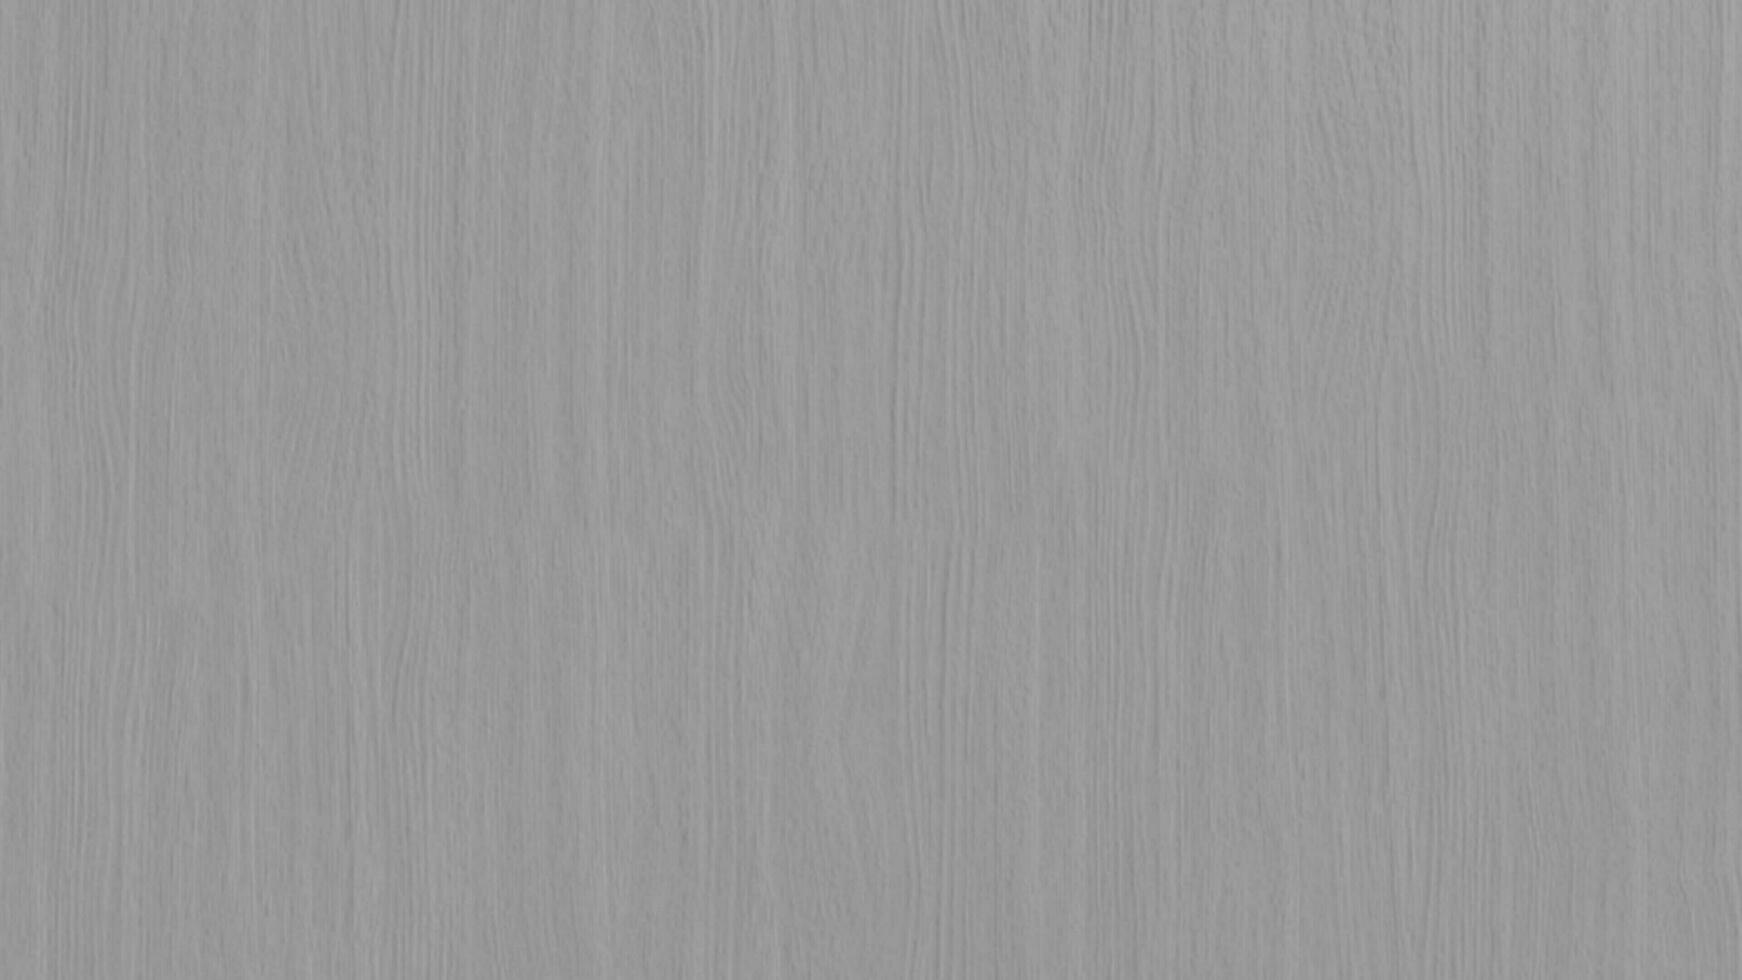 Holz Textur grau zum Hintergrund oder Startseite foto